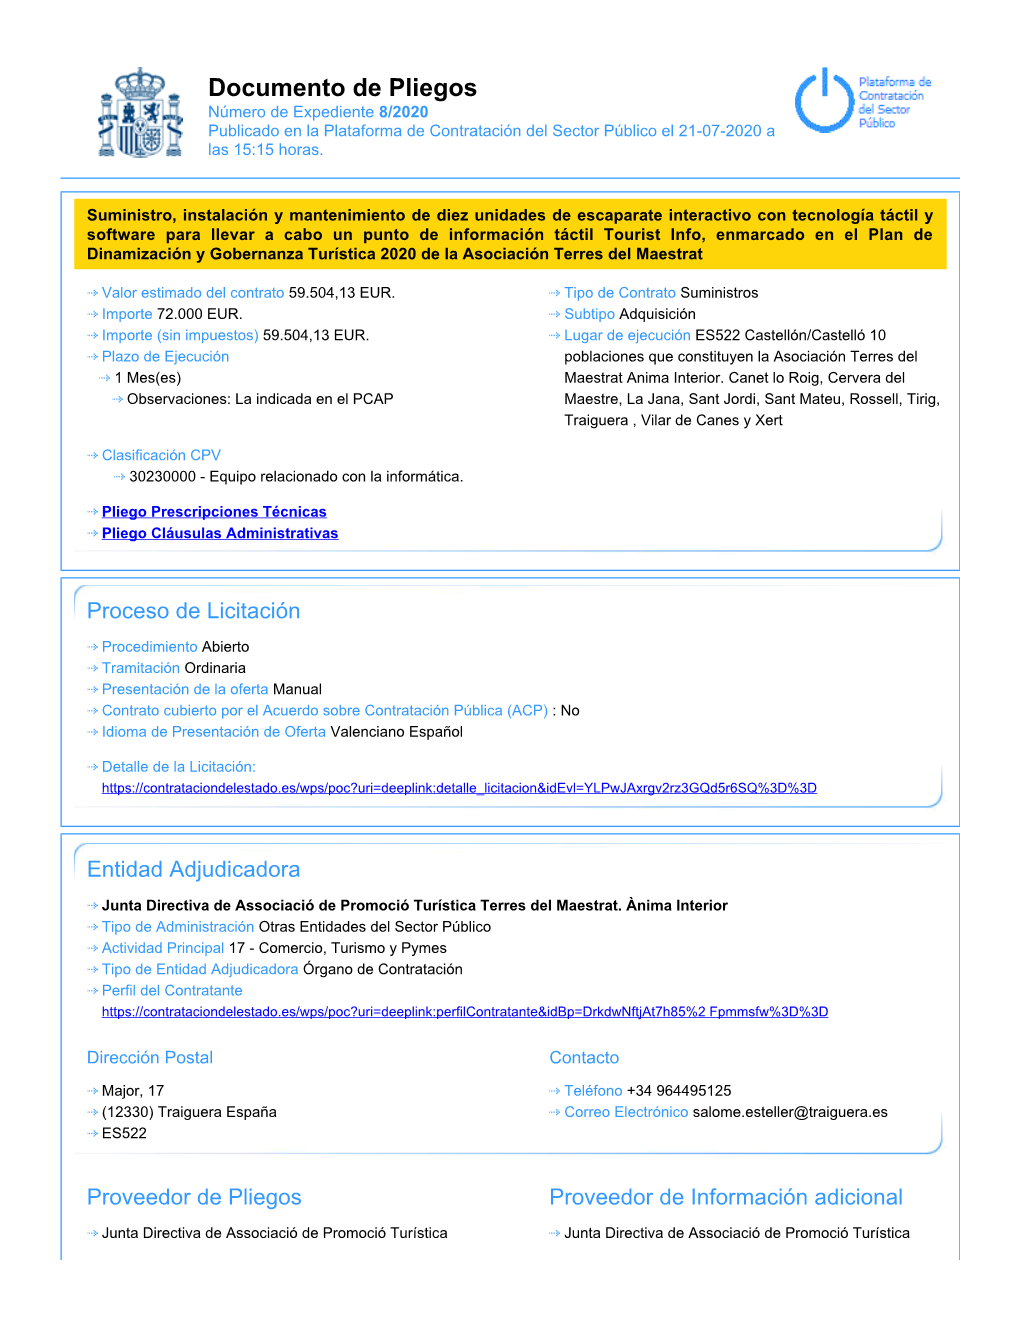 Documento De Pliegos Número De Expediente 8/2020 Publicado En La Plataforma De Contratación Del Sector Público El 21-07-2020 a Las 15:15 Horas